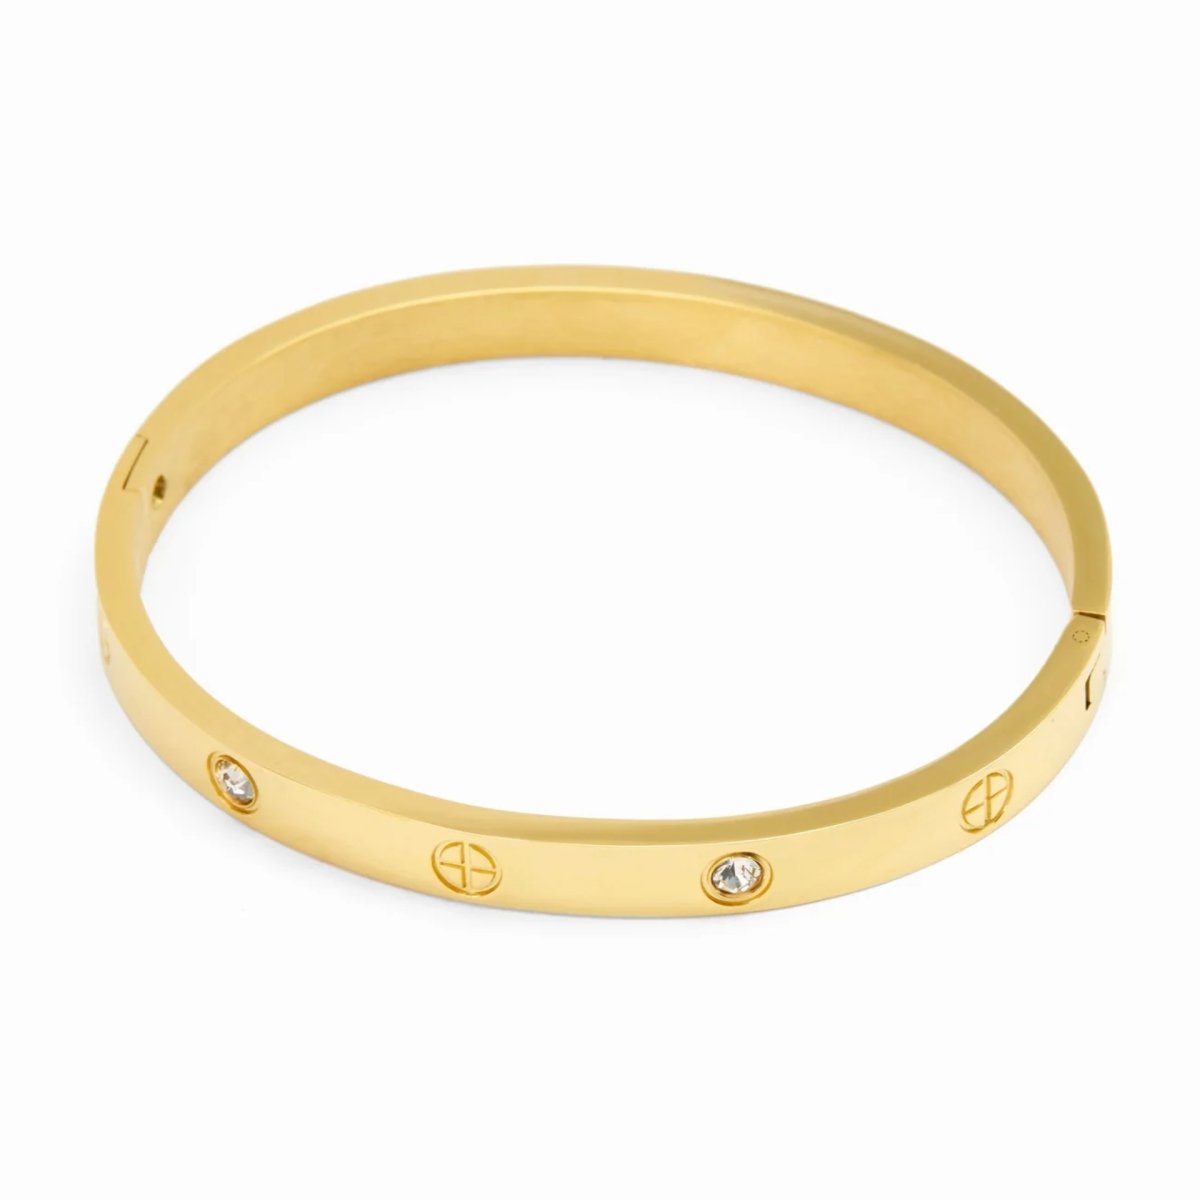 Bracelete Inspiração Cartier Banhado em Ouro 18k - Murano Joias